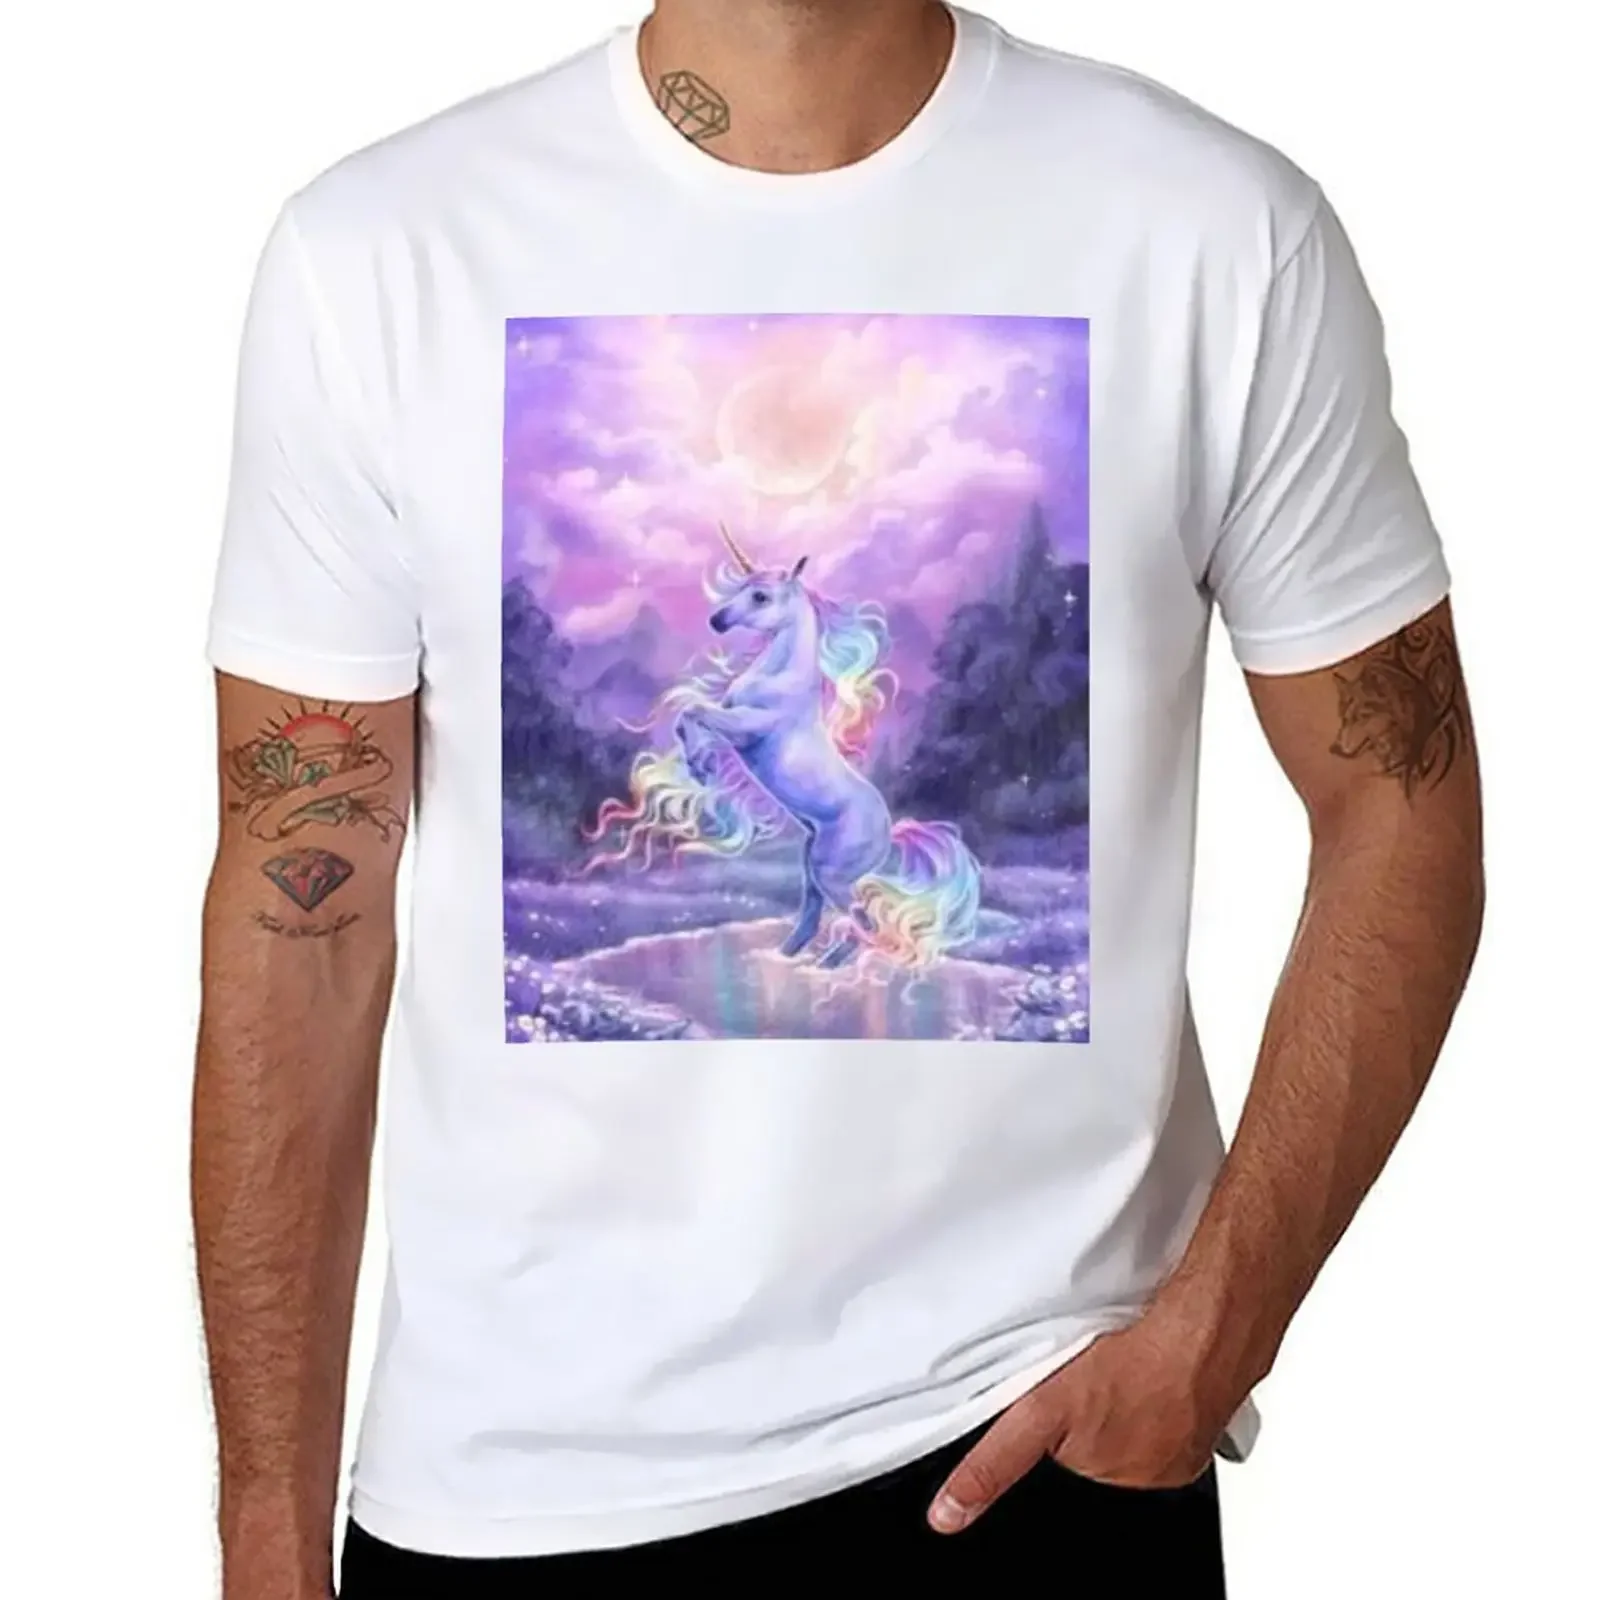 

Волшебная Радужная футболка с единорогом, рубашки, футболки с графическим рисунком, простые летние топы, мужская одежда